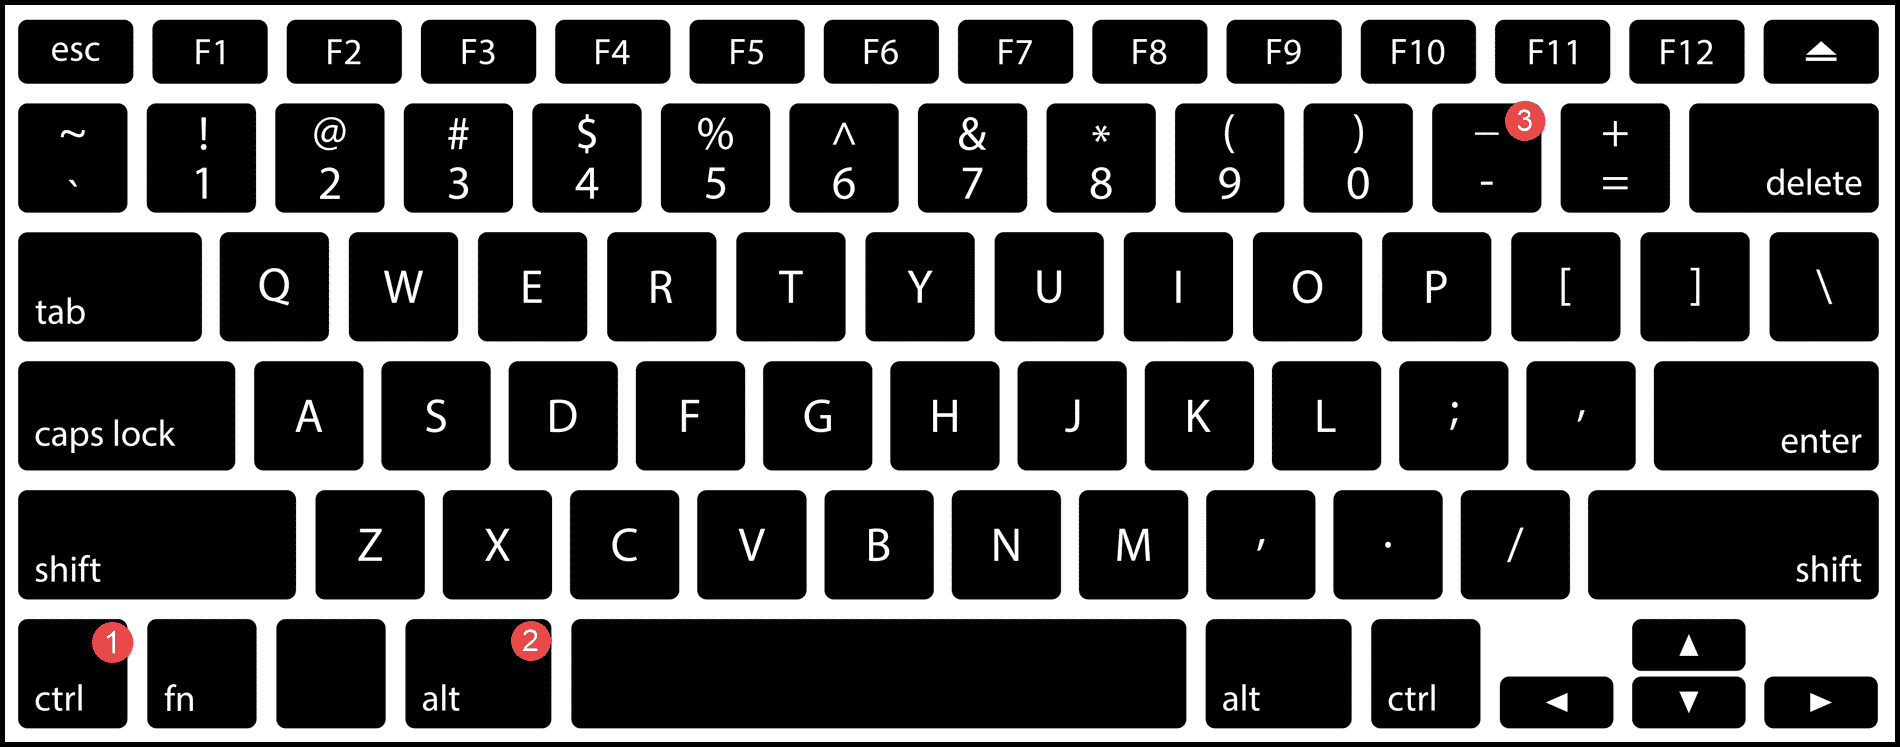 método abreviado de teclado para hacer zoom